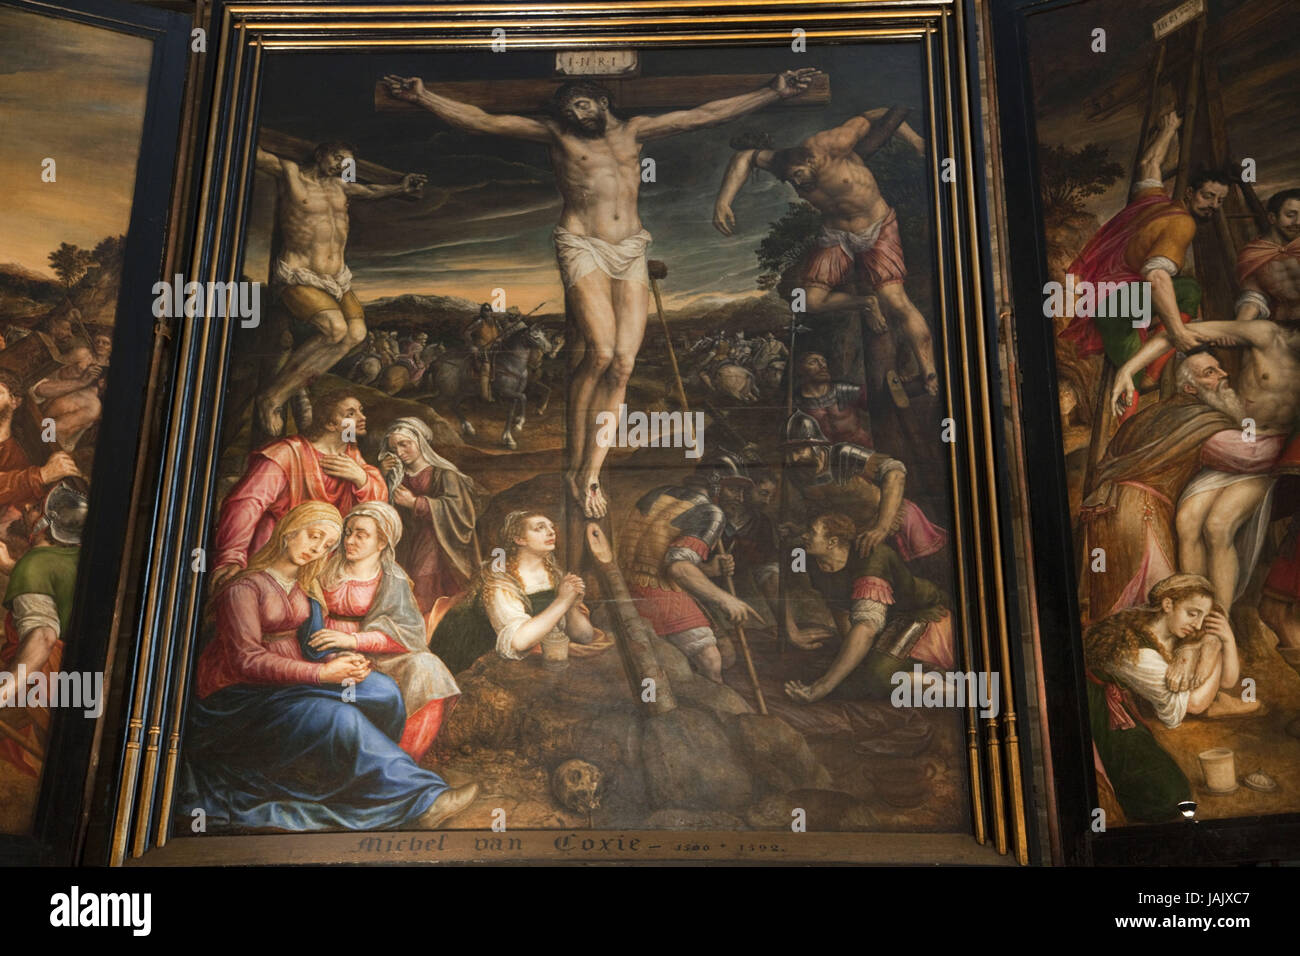 Belgique,Bruxelles,cathédrale St Michel et Gudule,Peinture,de,la représentation de la crucifixion de Jésus von Michel van Coxie, Banque D'Images